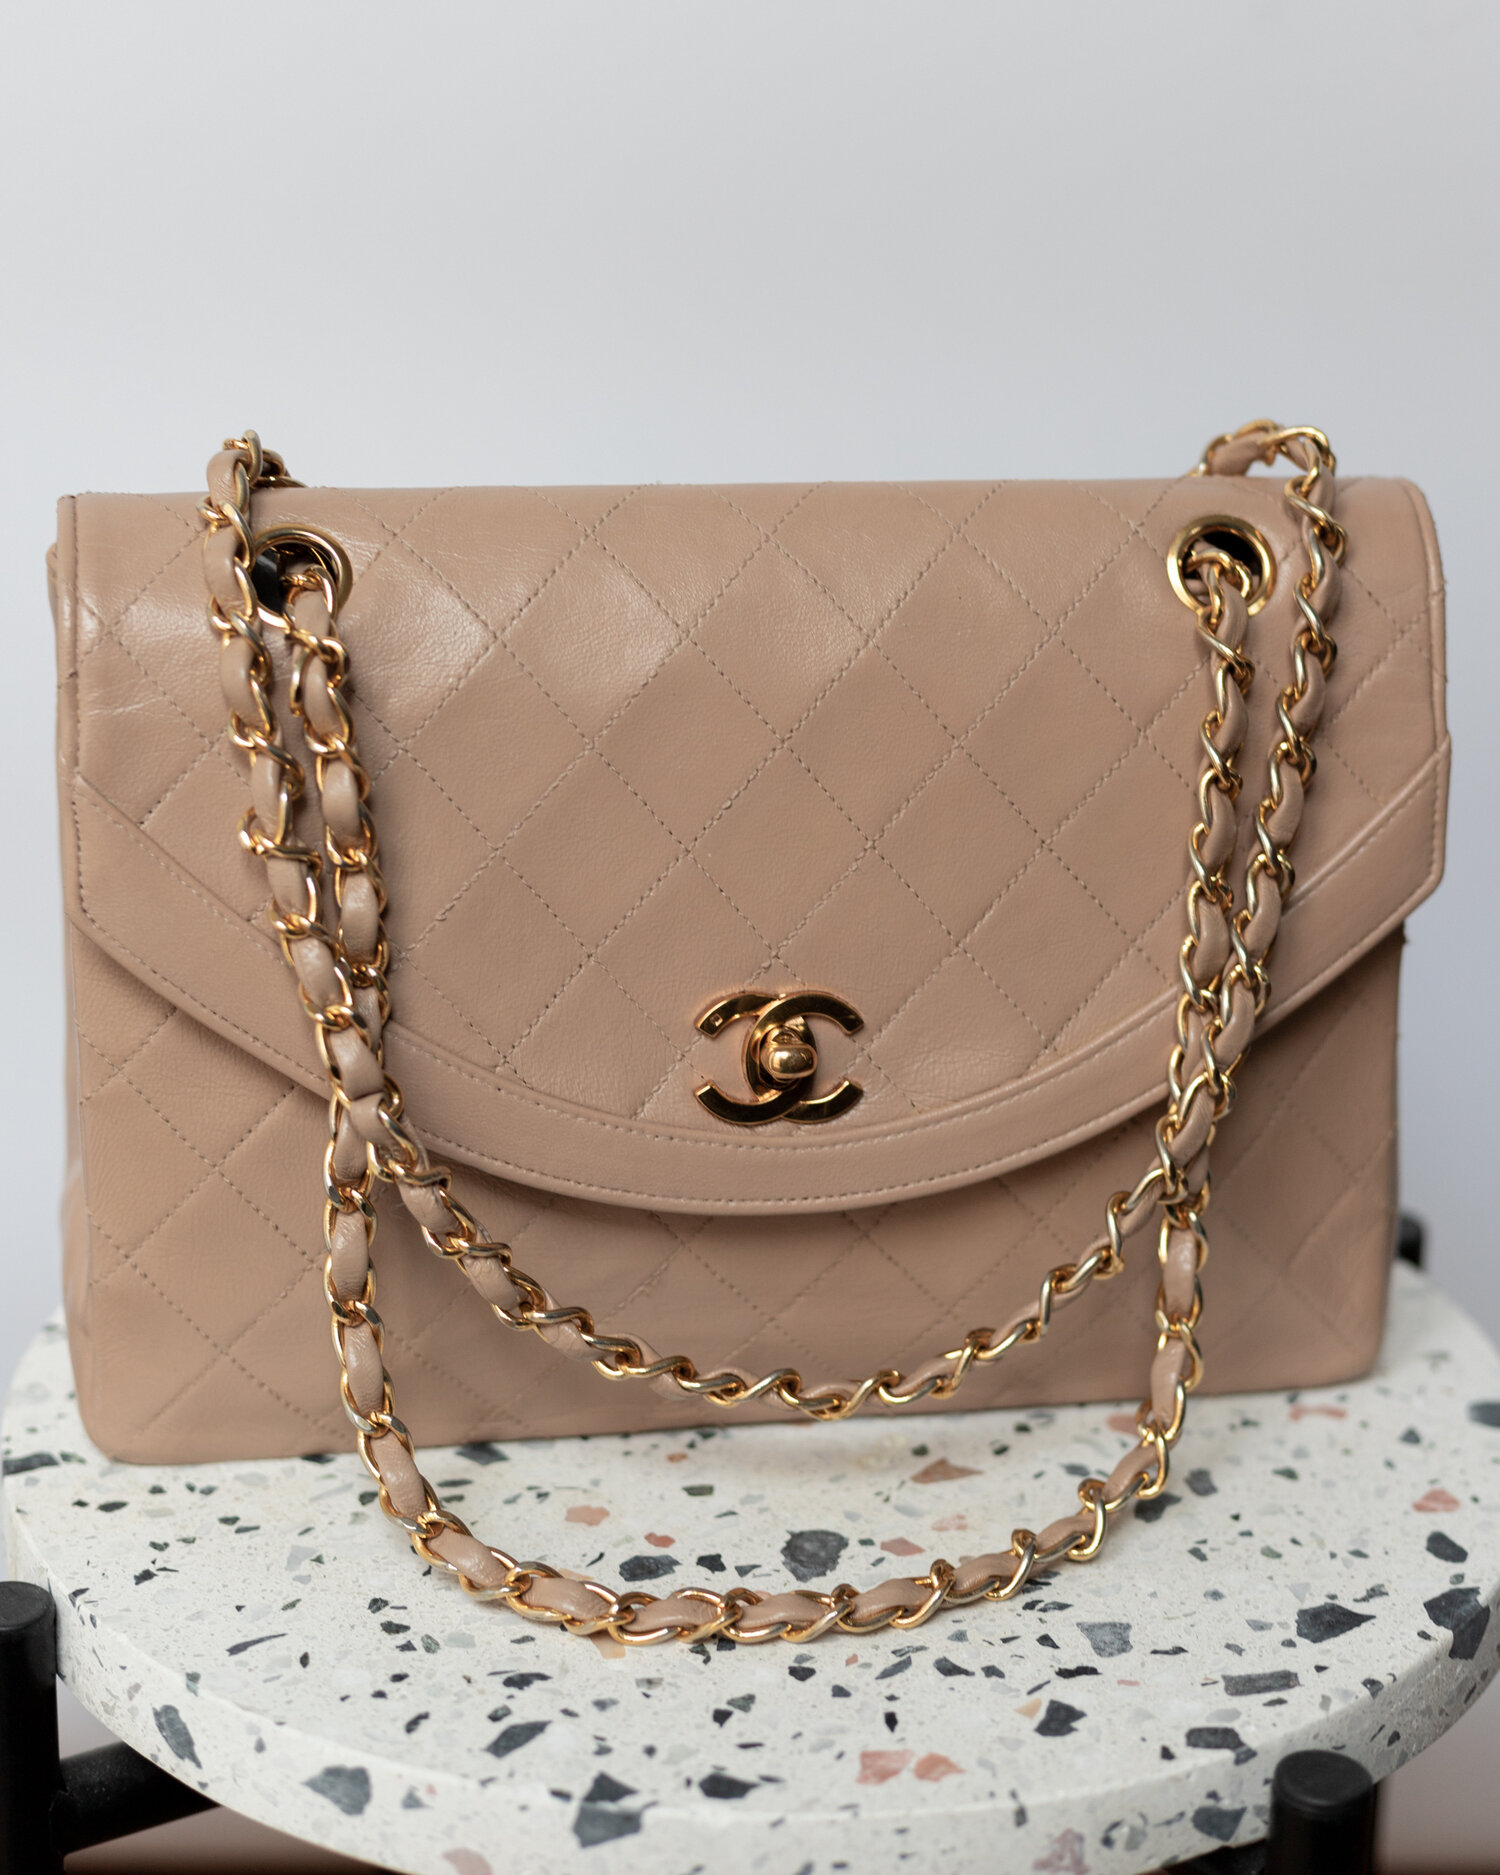 Vintage Chanel Flap Bag in Nude Color — singulié